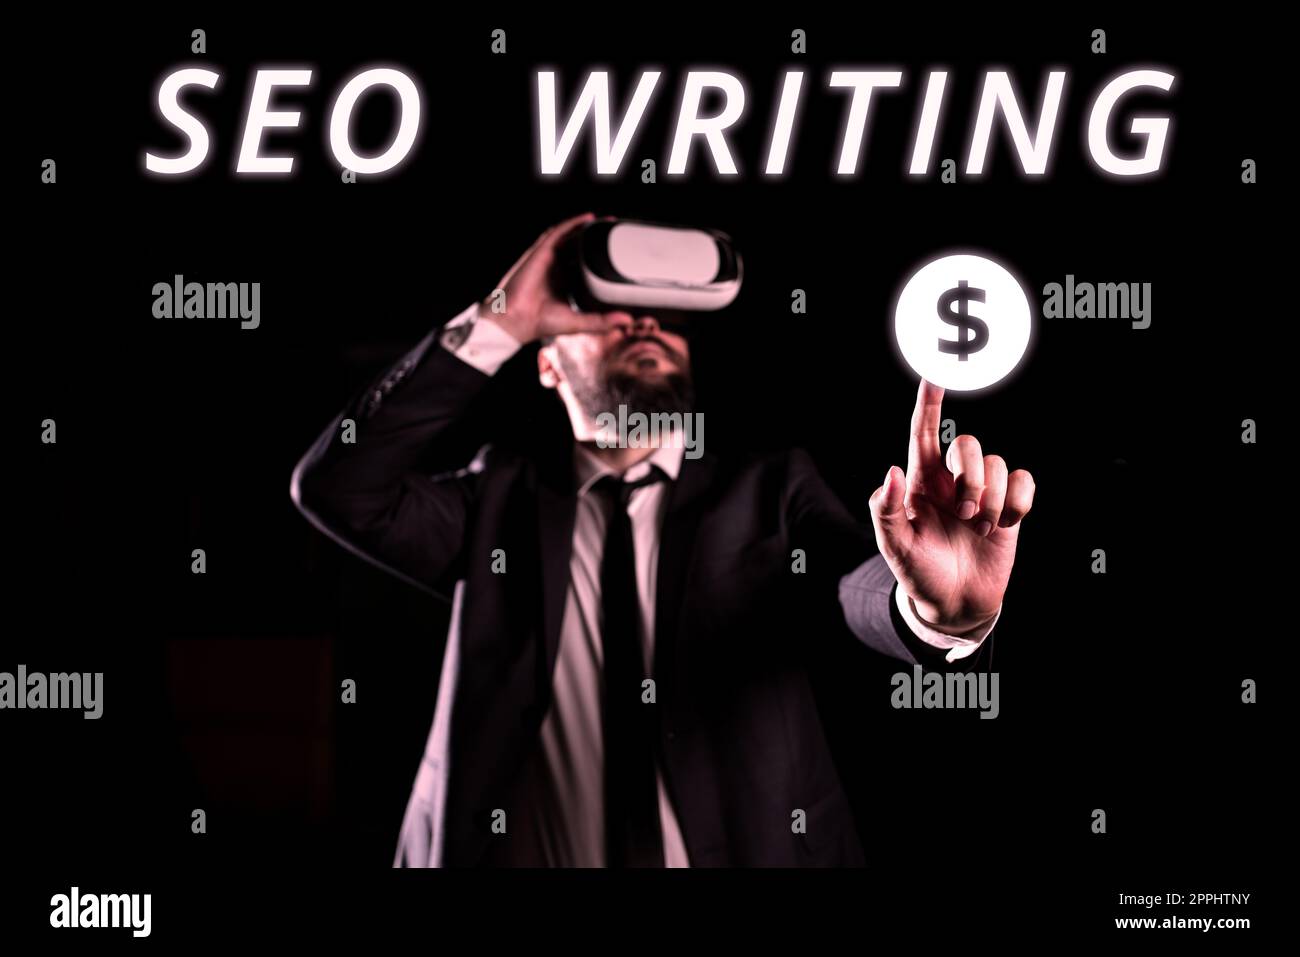 Konzeptionelle Darstellung Seo Writing. Business Showcase, das die Aufmerksamkeit der Suchmaschinen mit einem bestimmten Wort weckt Stockfoto